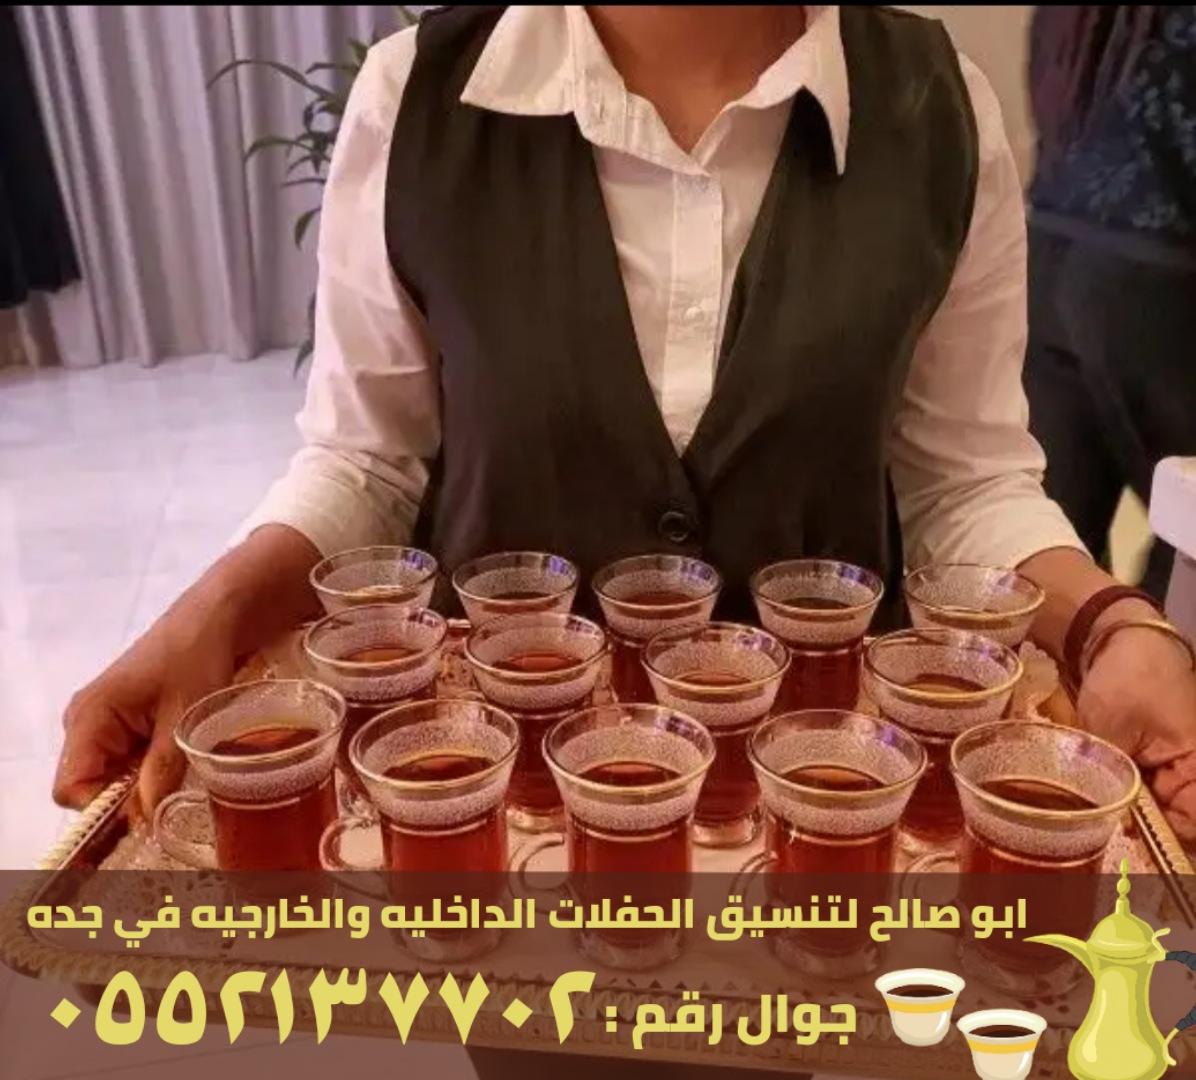 صبابين قهوة و قهوجي ضيافه في جدة,0552137702 948094231